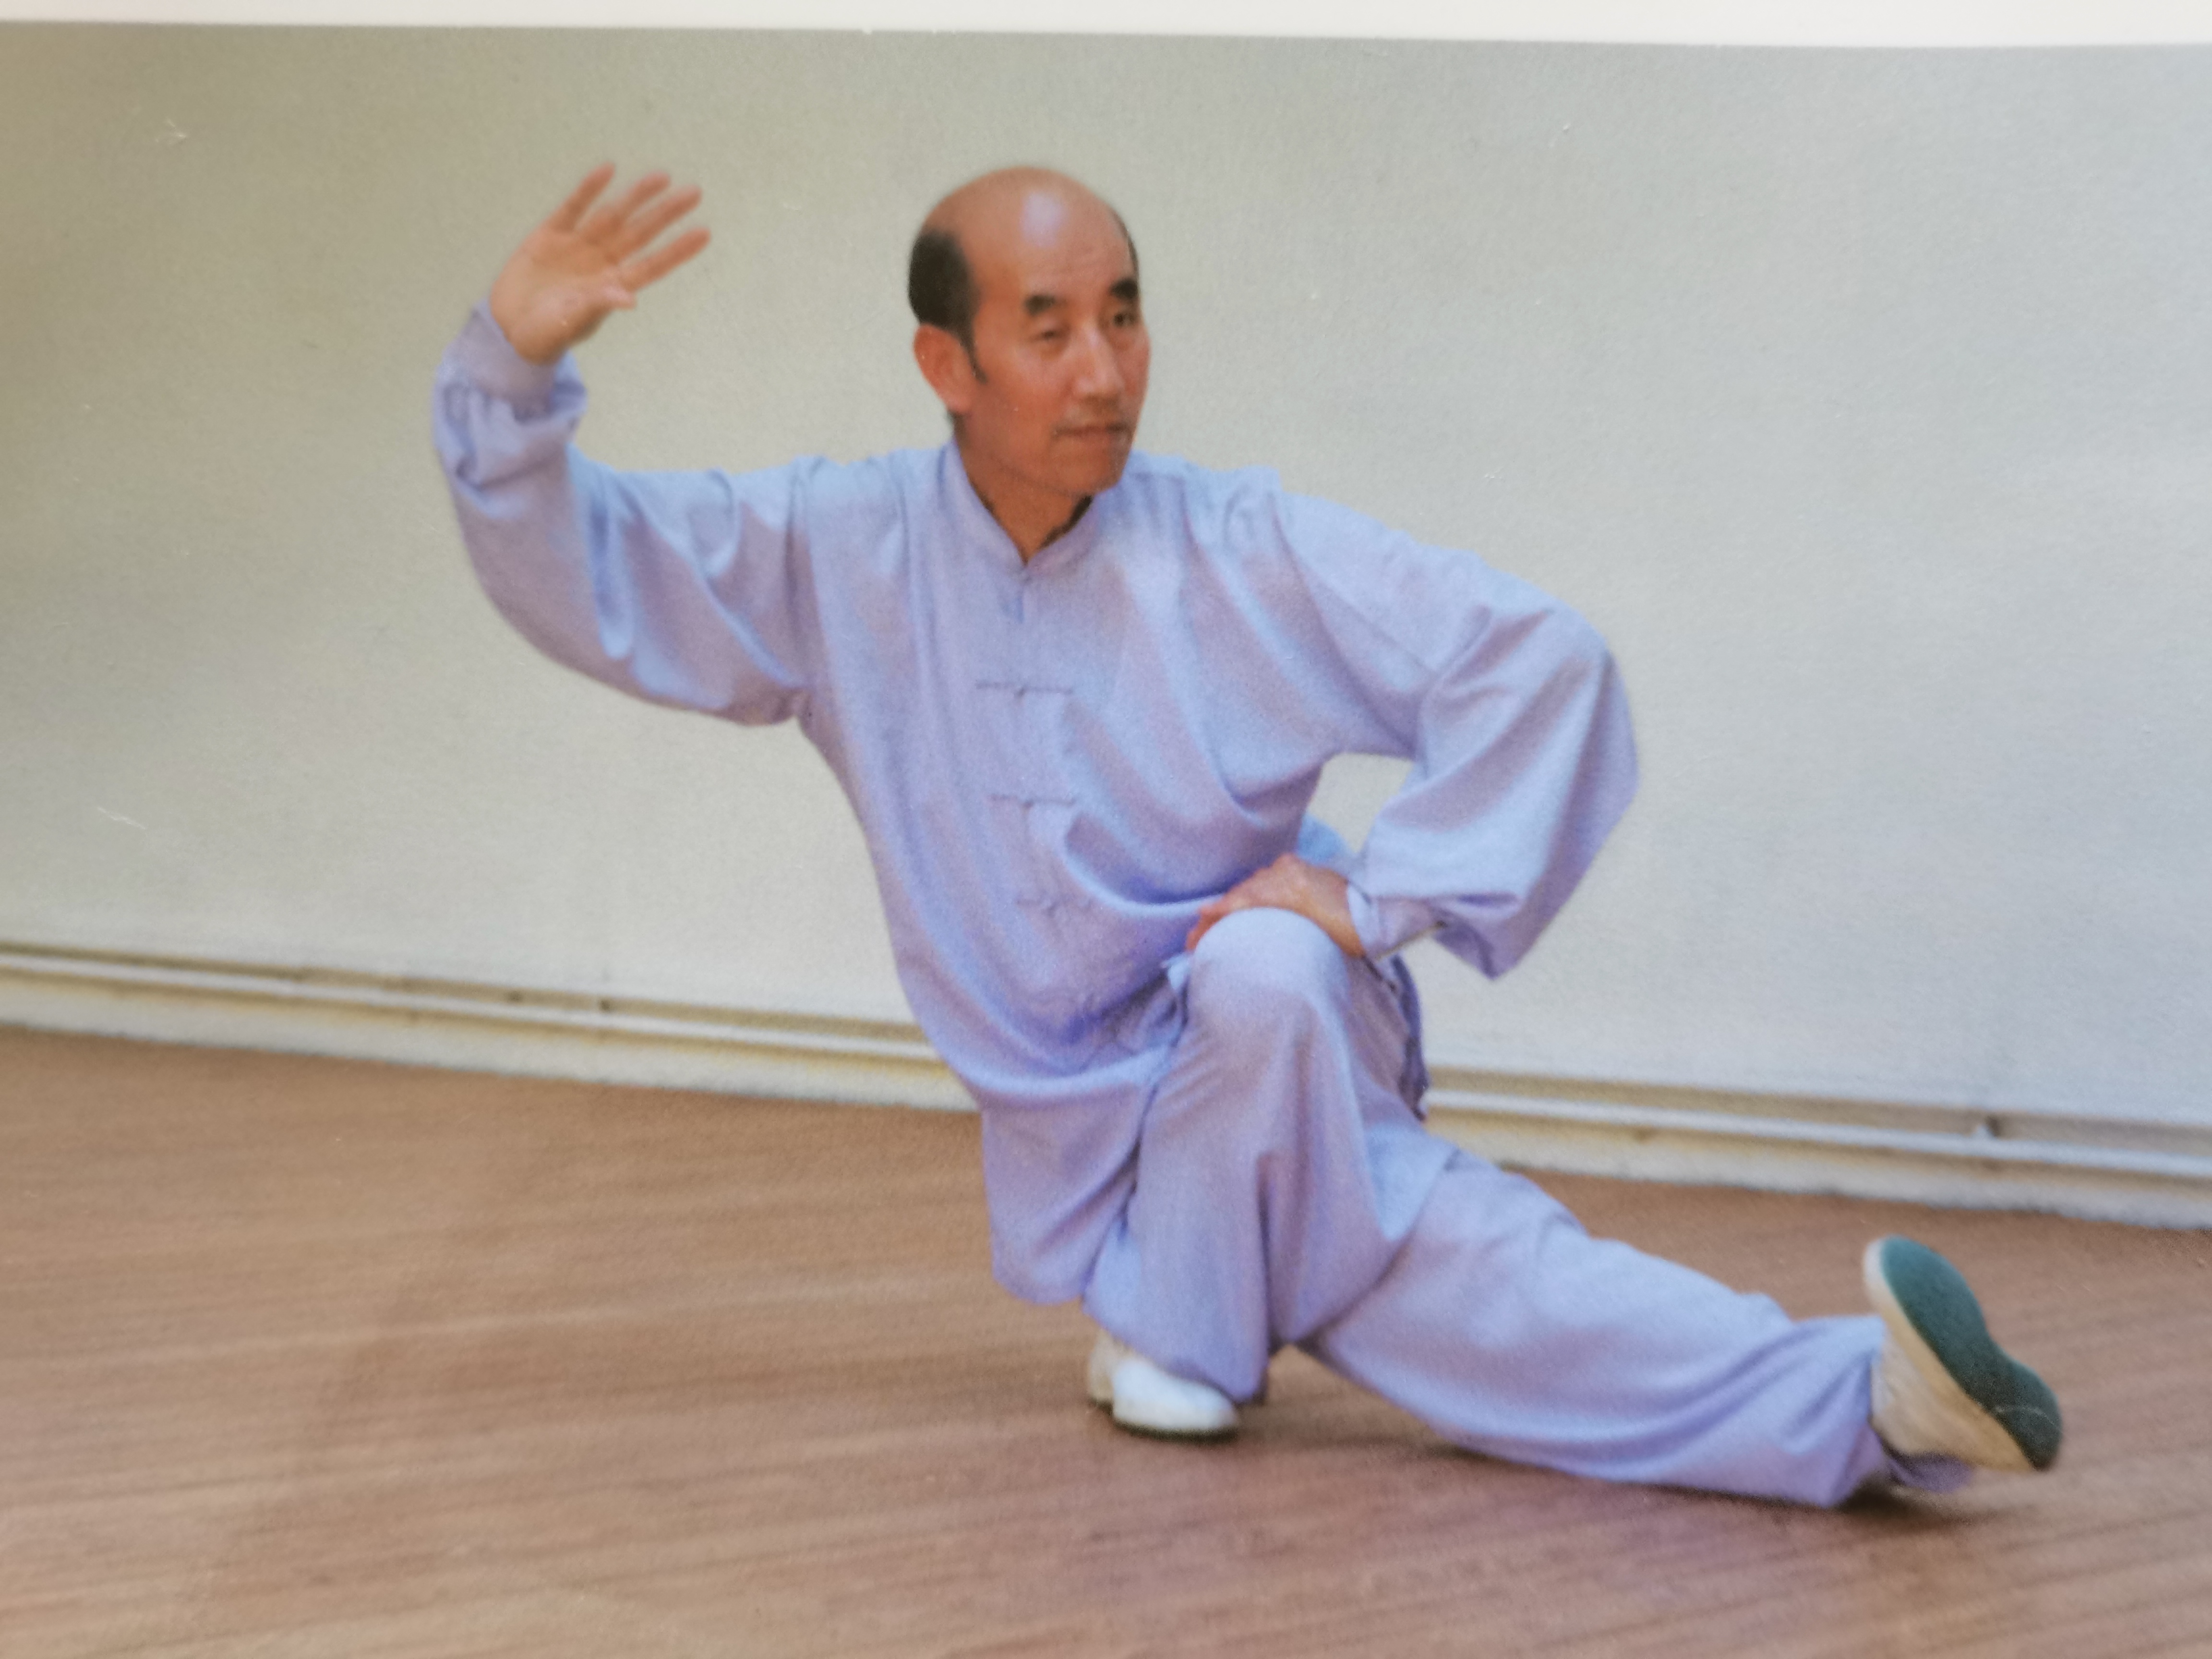 Professor Zhang posture